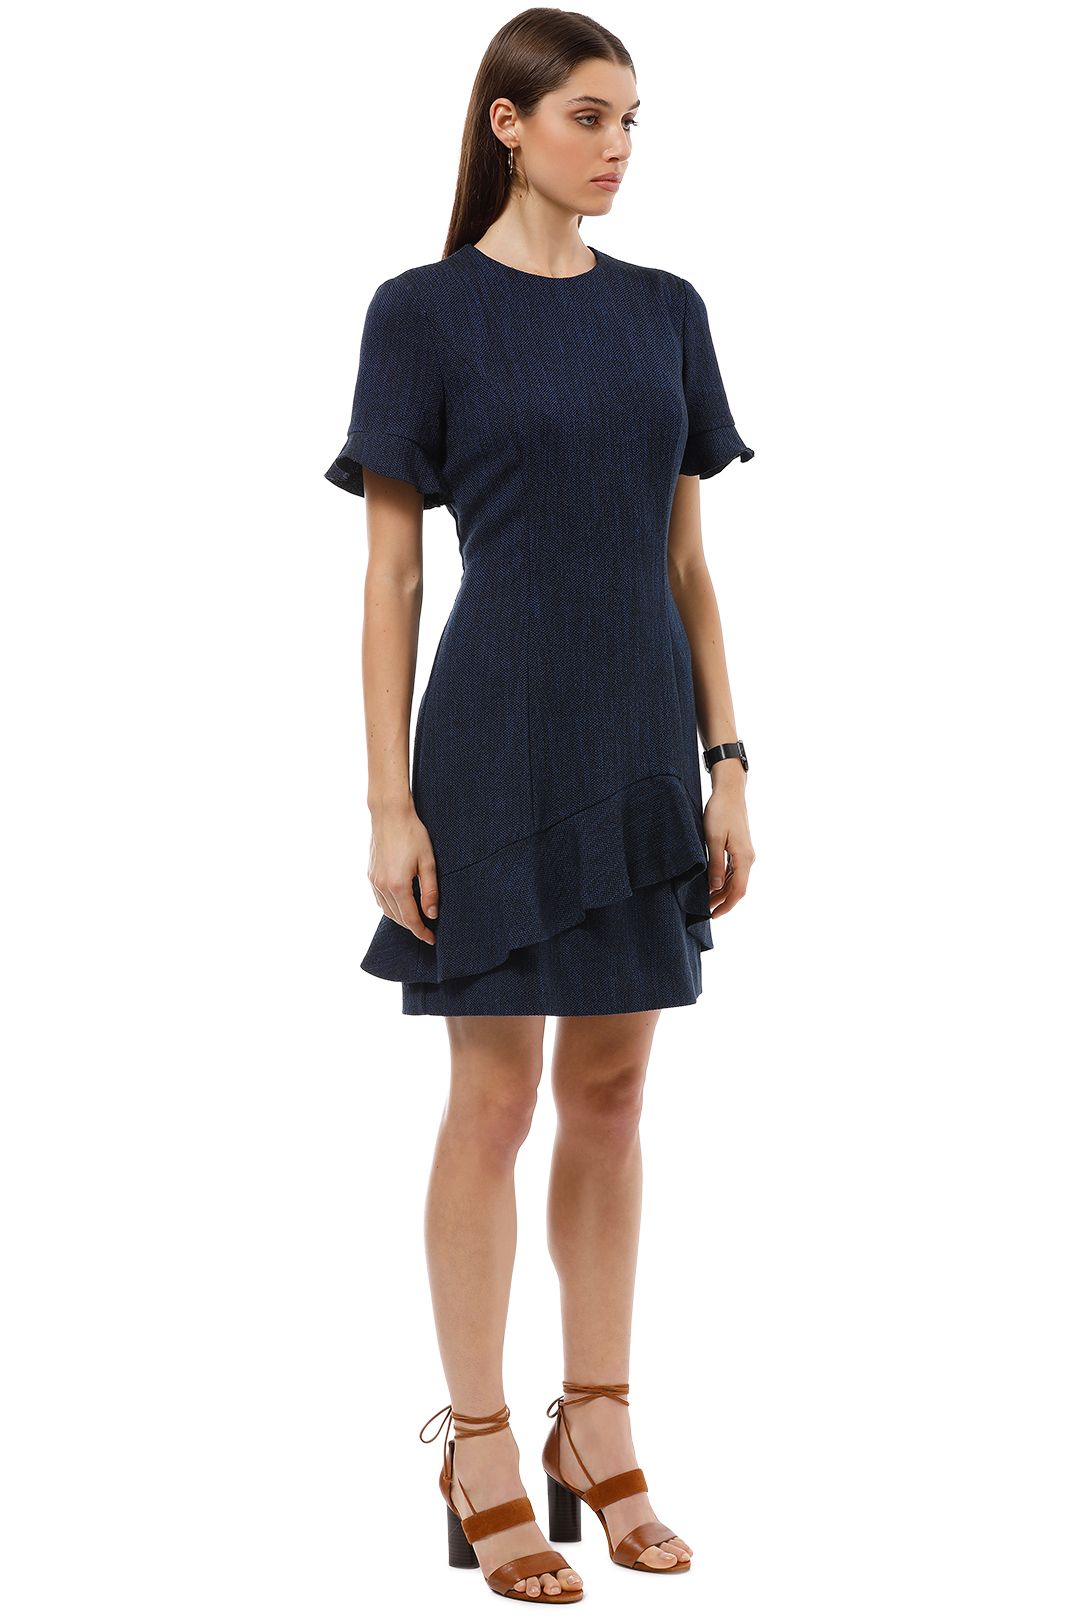 Cue - Tweed Asymmetric Frill Dress - Blue - Side